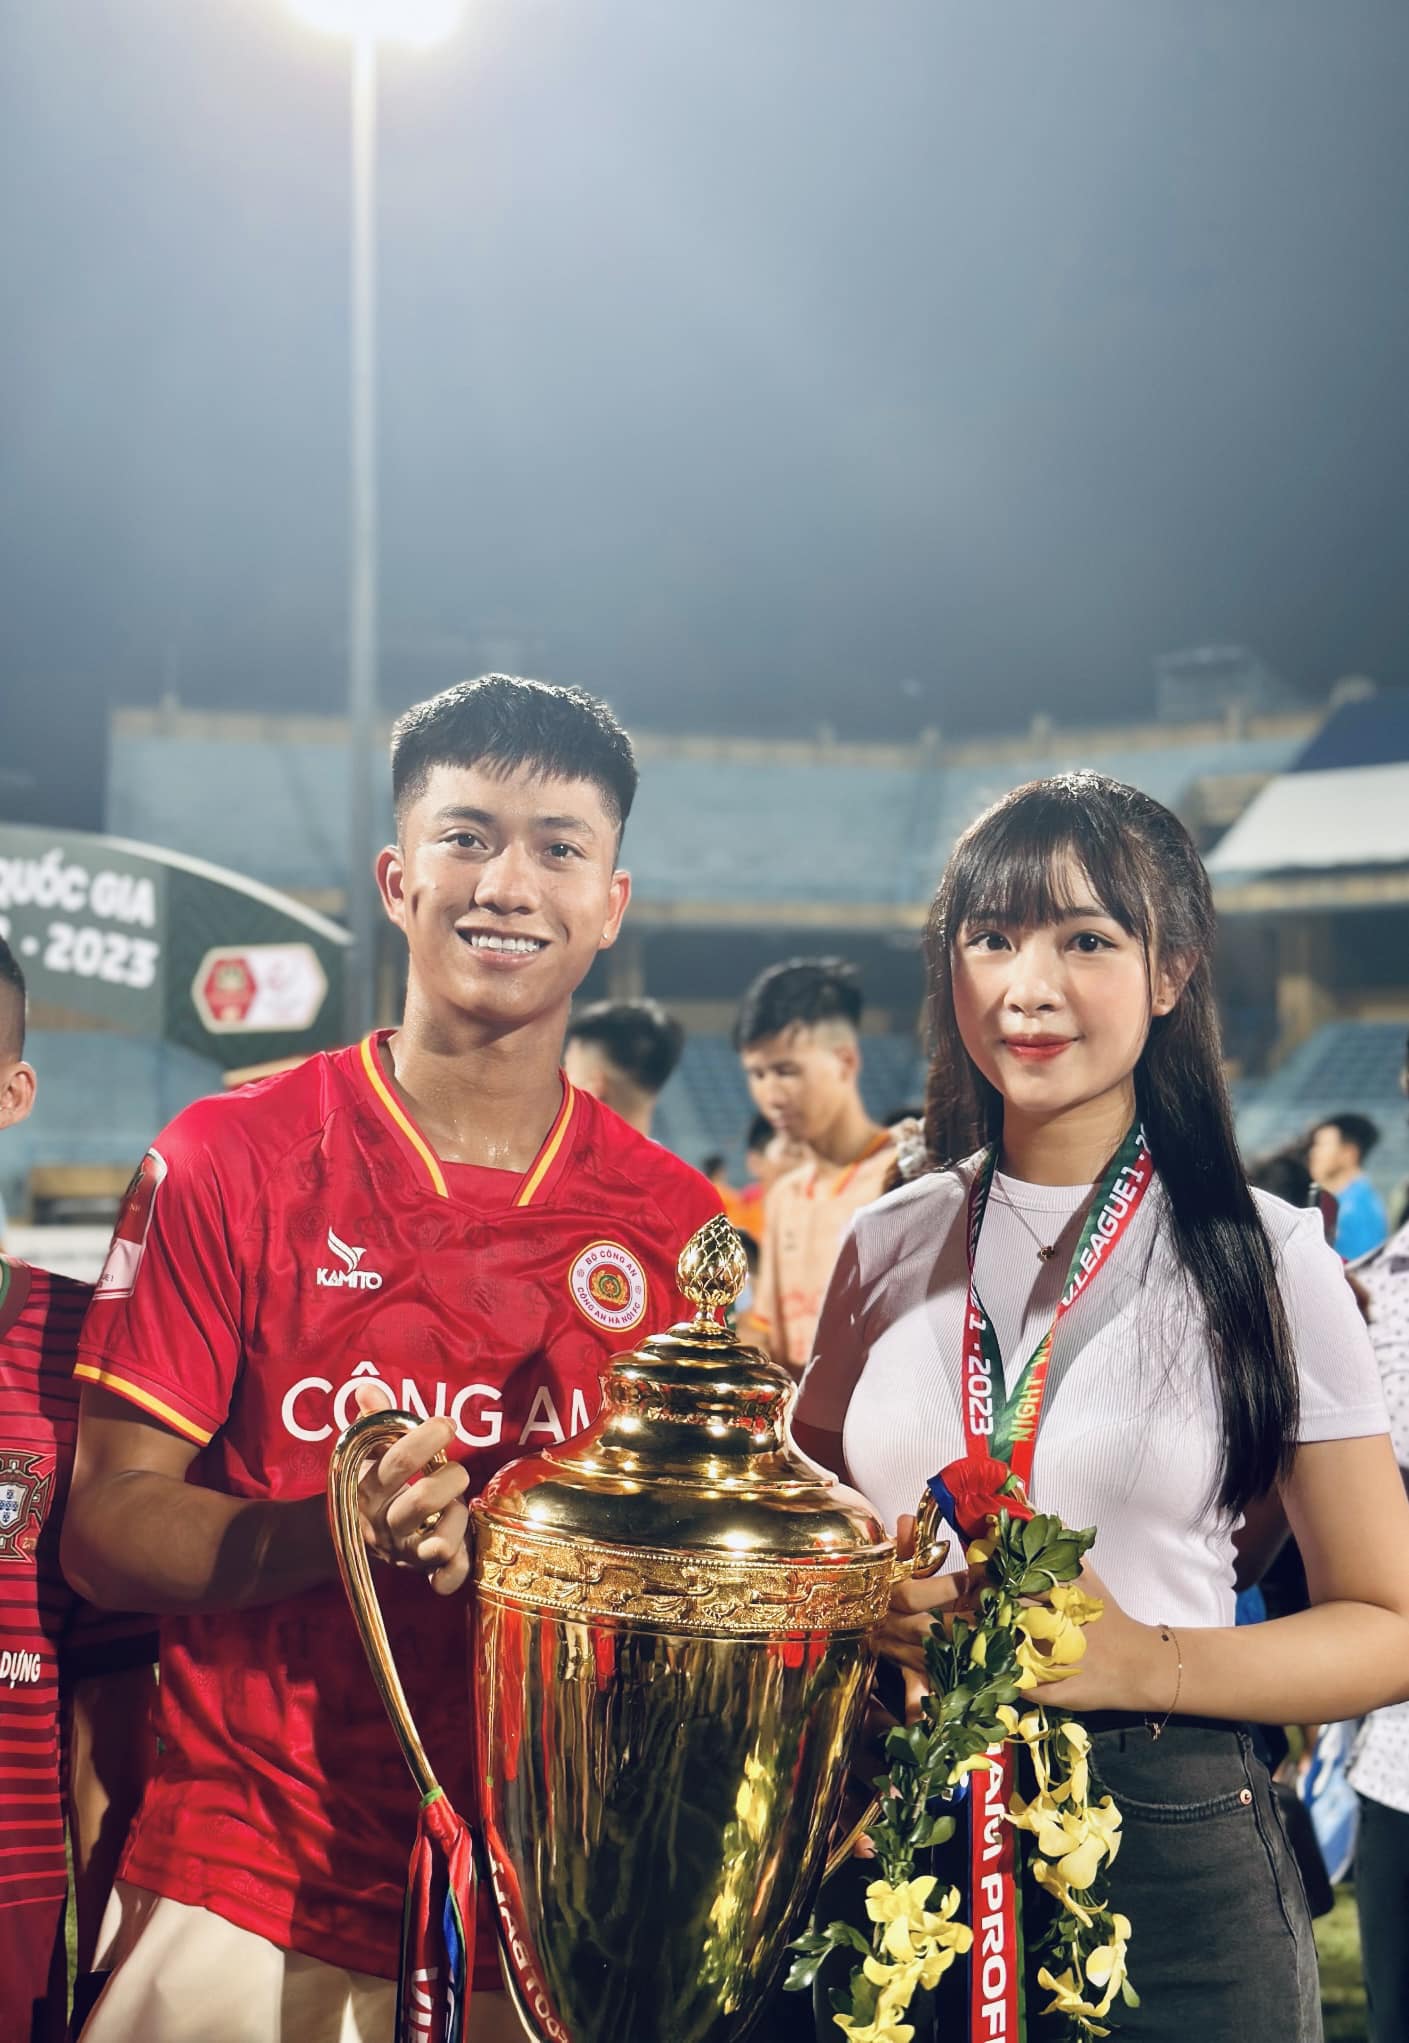 Tiền vệ tuyển Việt Nam tung bộ ảnh mừng giáng sinh ngọt ngào với hotgirl xứ Nghệ- Ảnh 4.